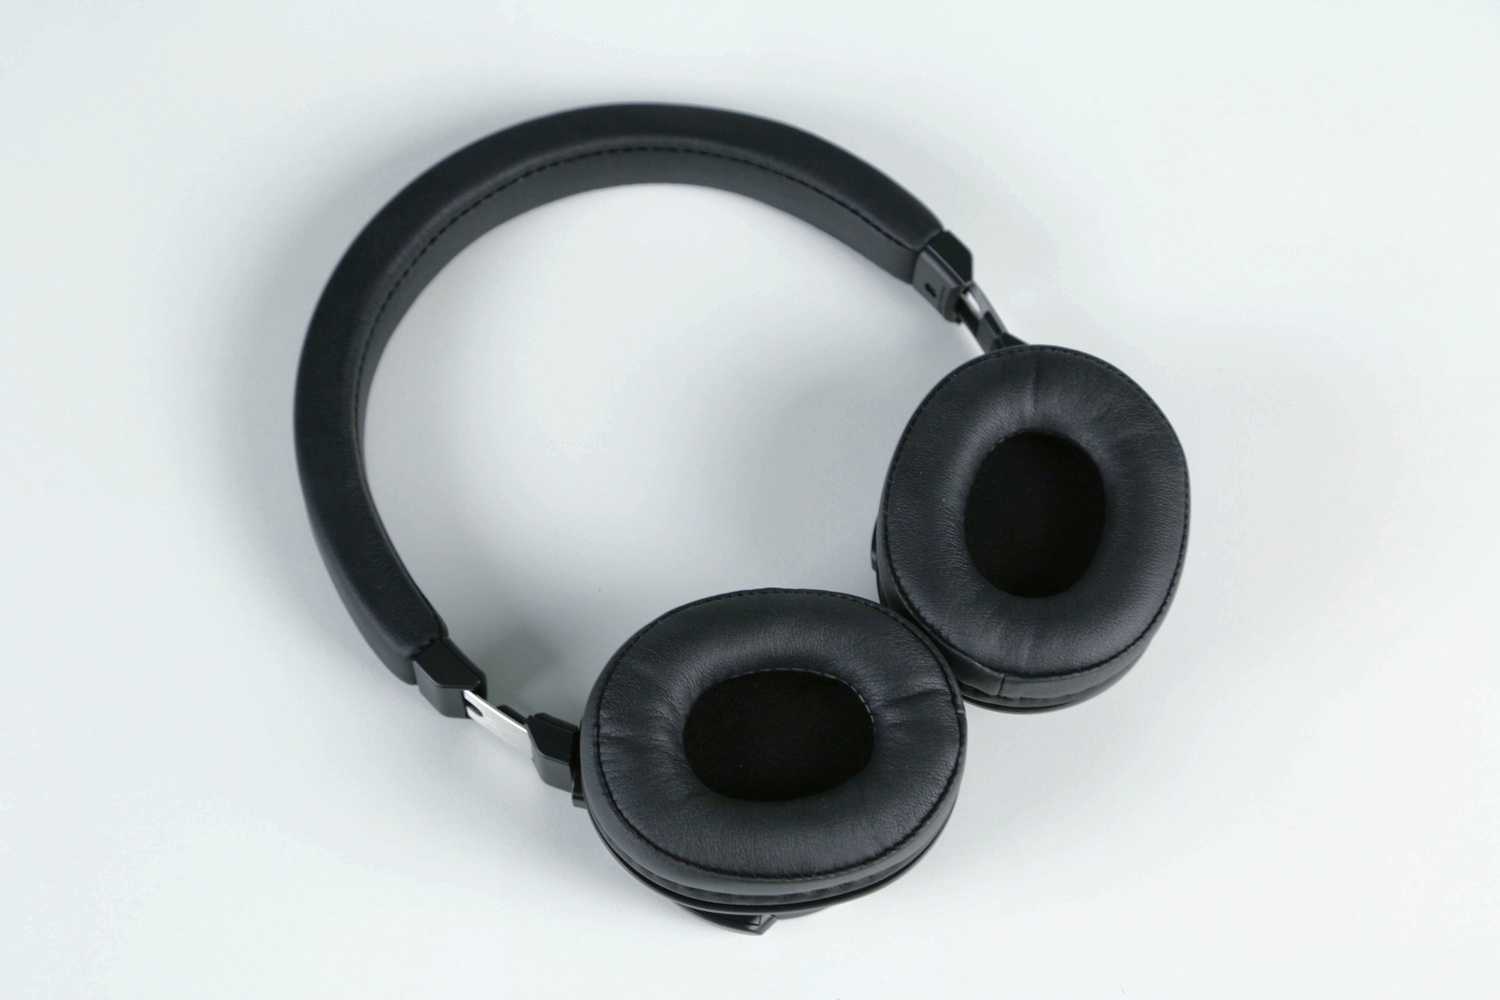 Наушники audio-technica ath-sj11 bk — купить, цена и характеристики, отзывы